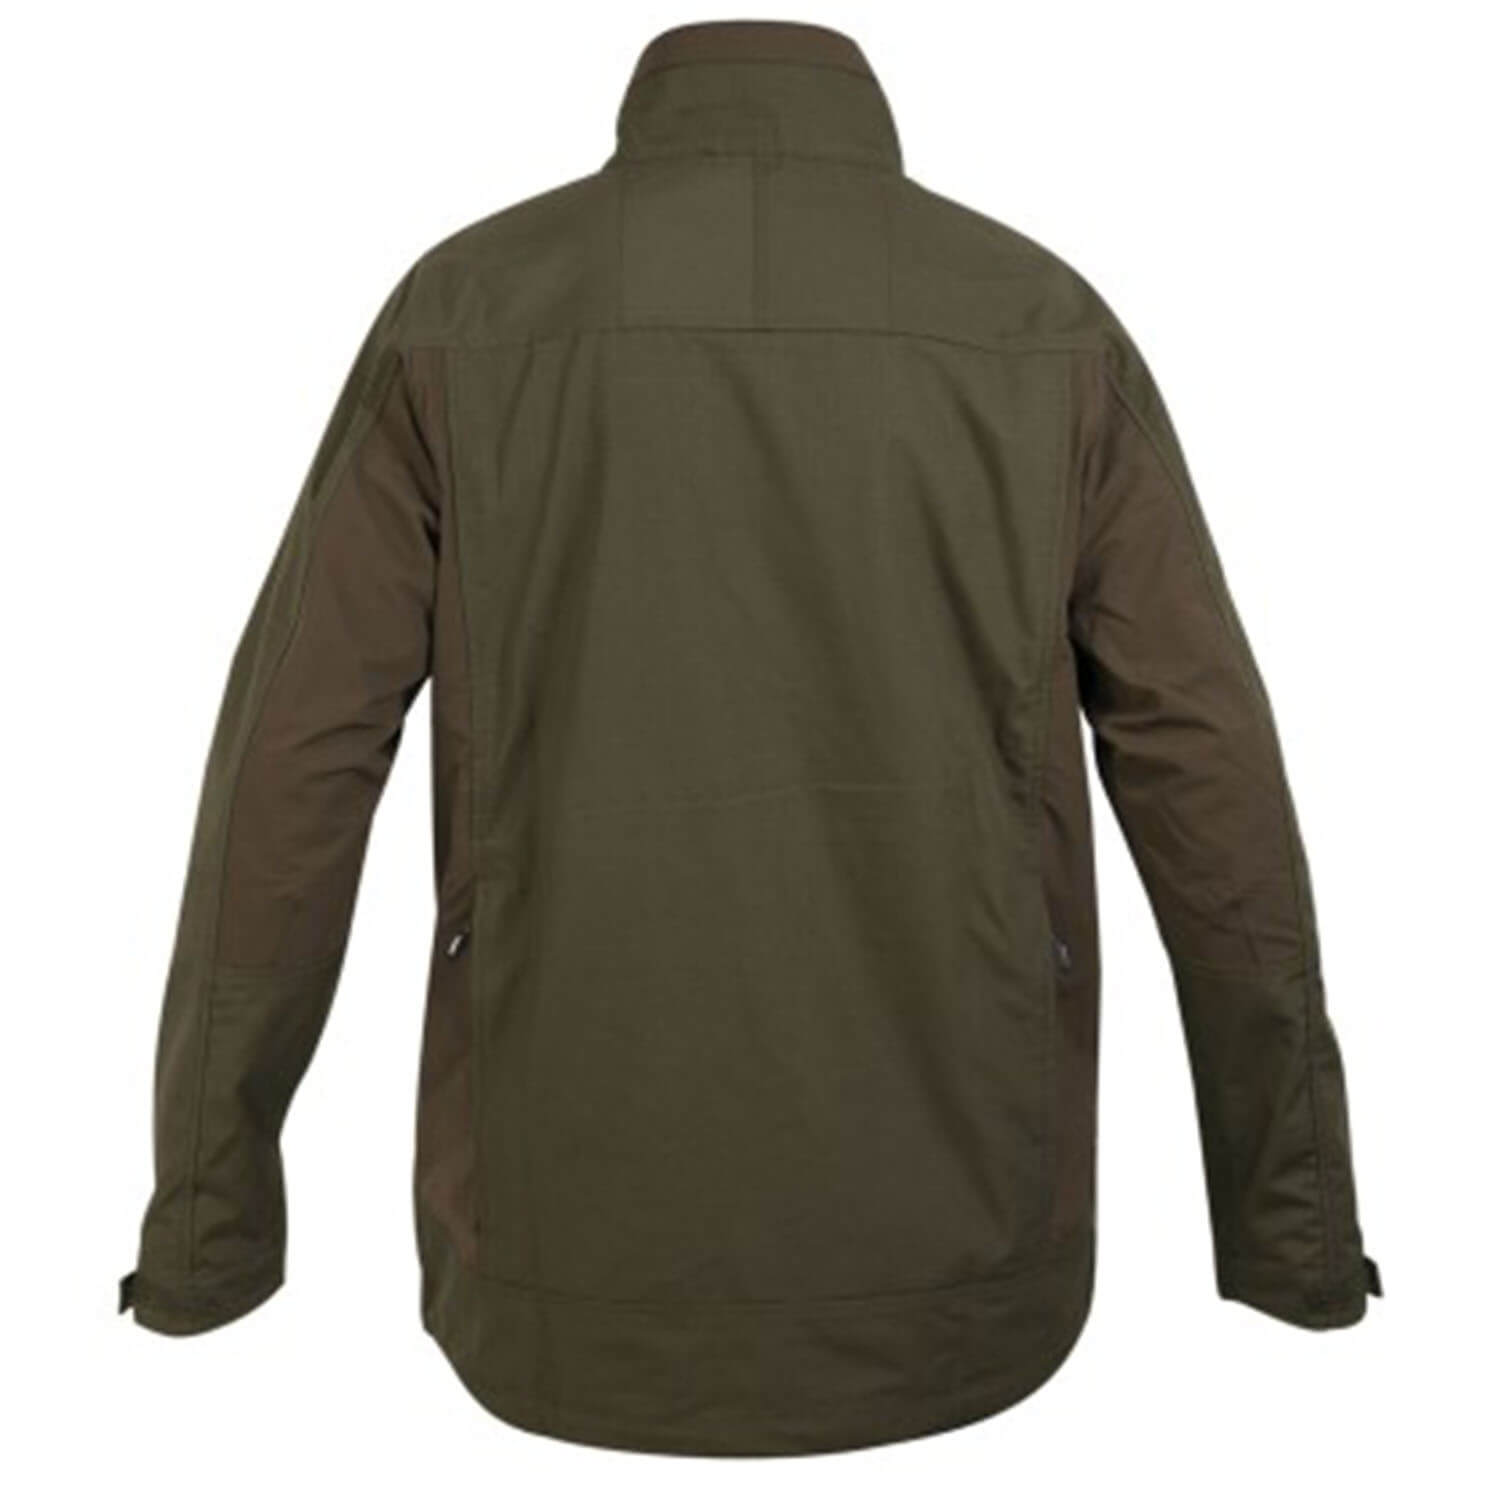  Hart Pafos hunting jacket